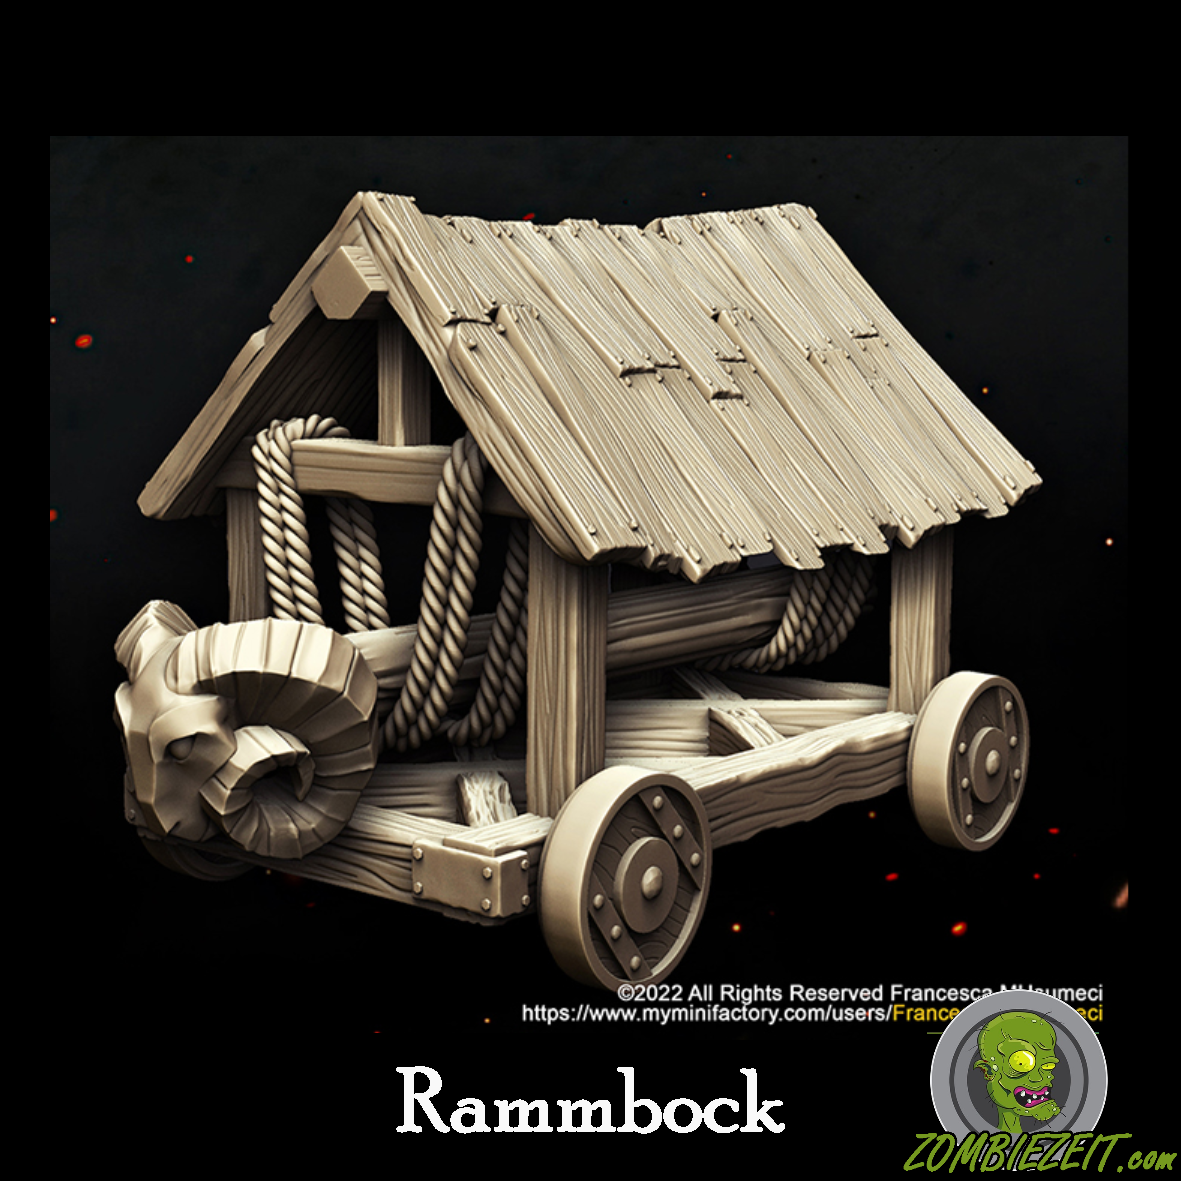 Rammbock